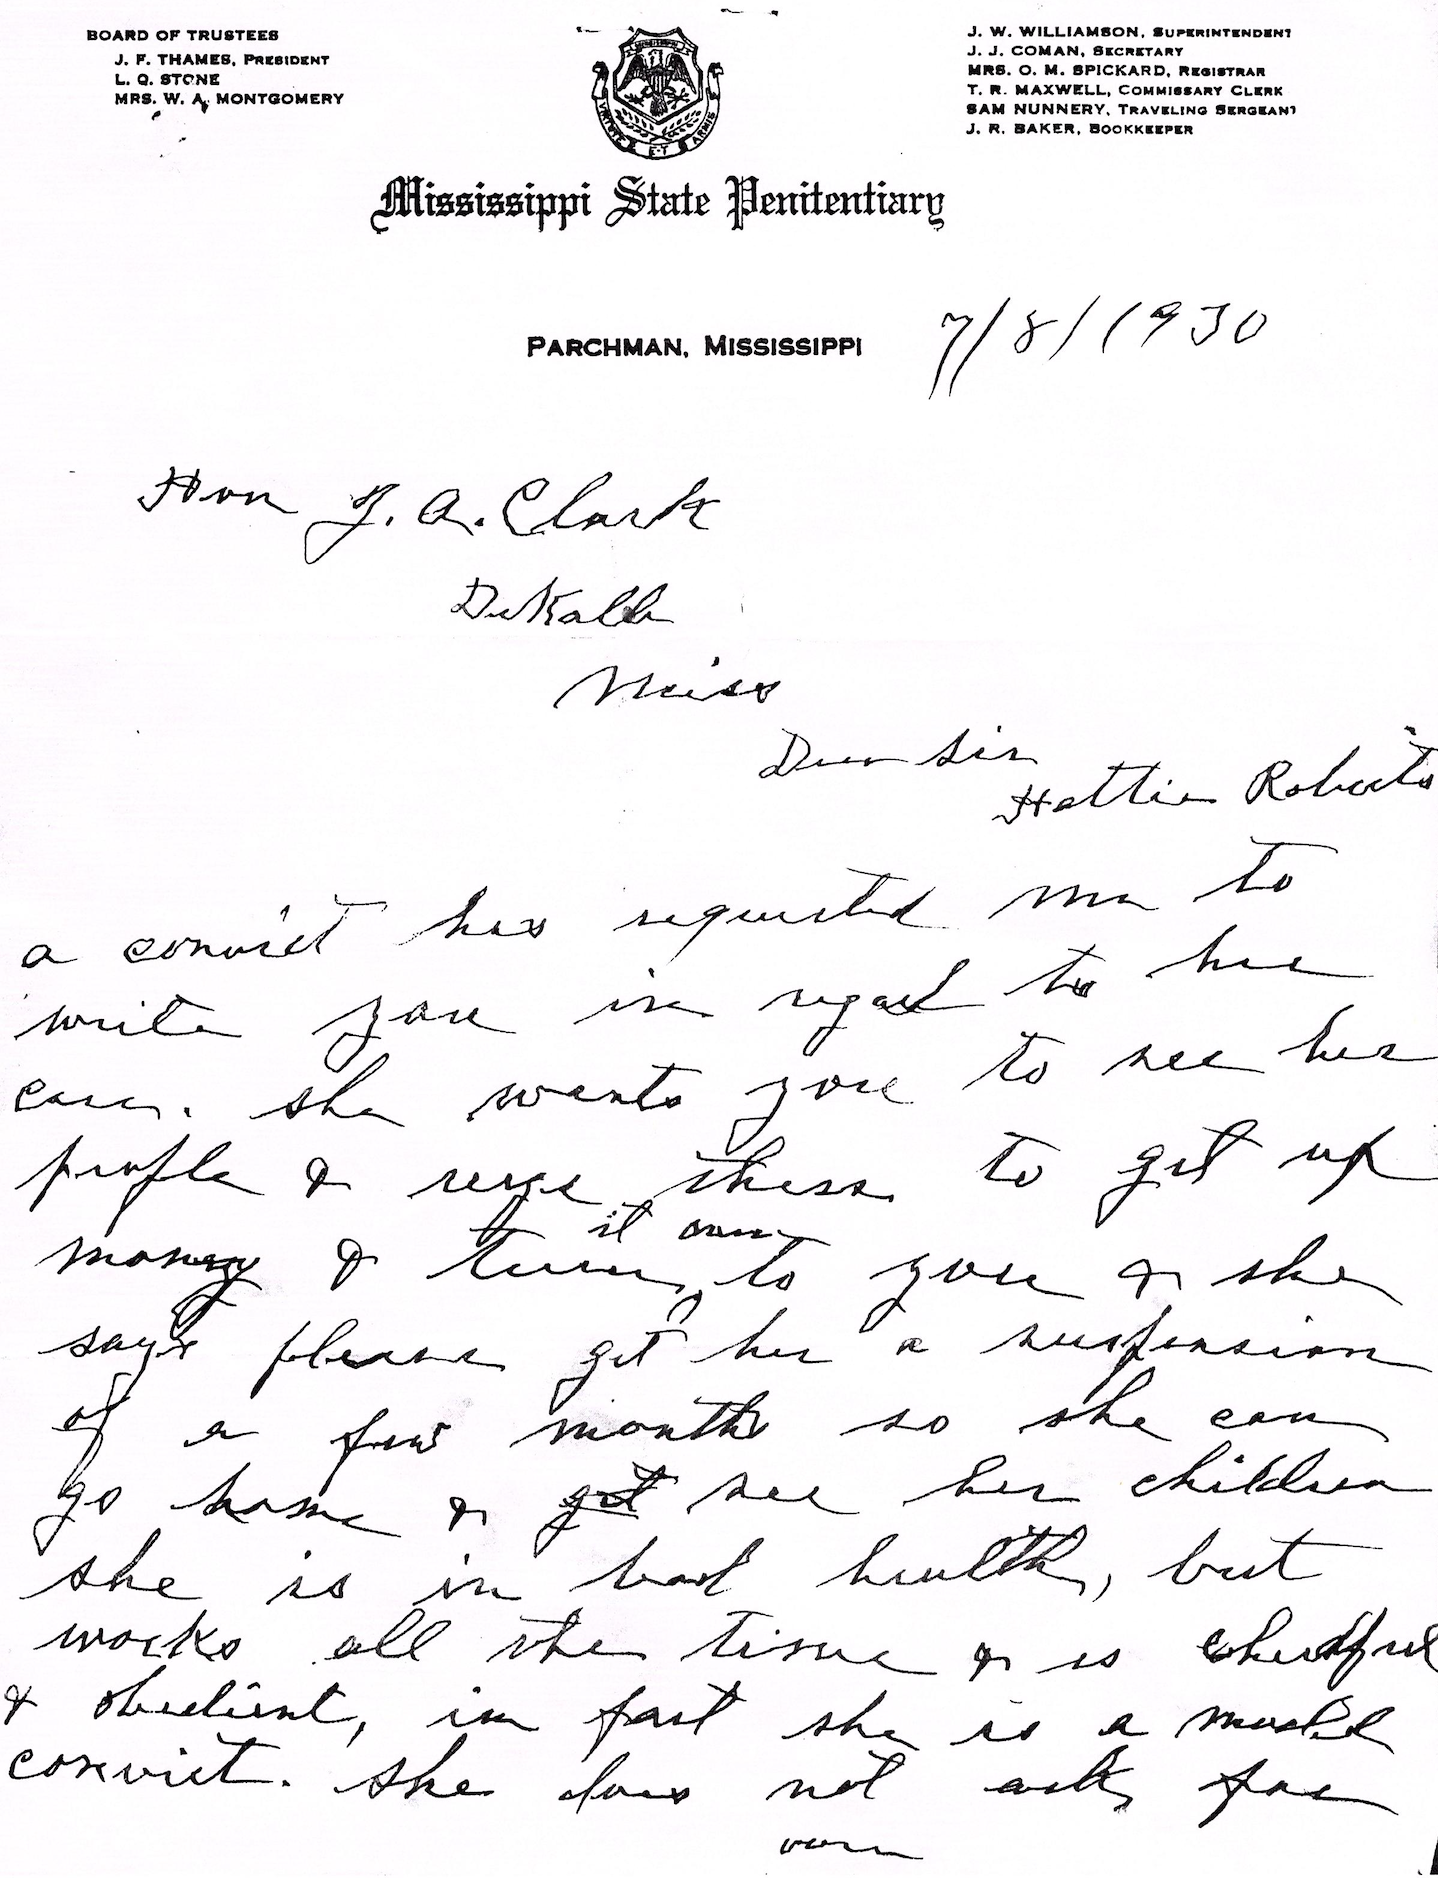 7-8-1930 Letter to John A. Clark